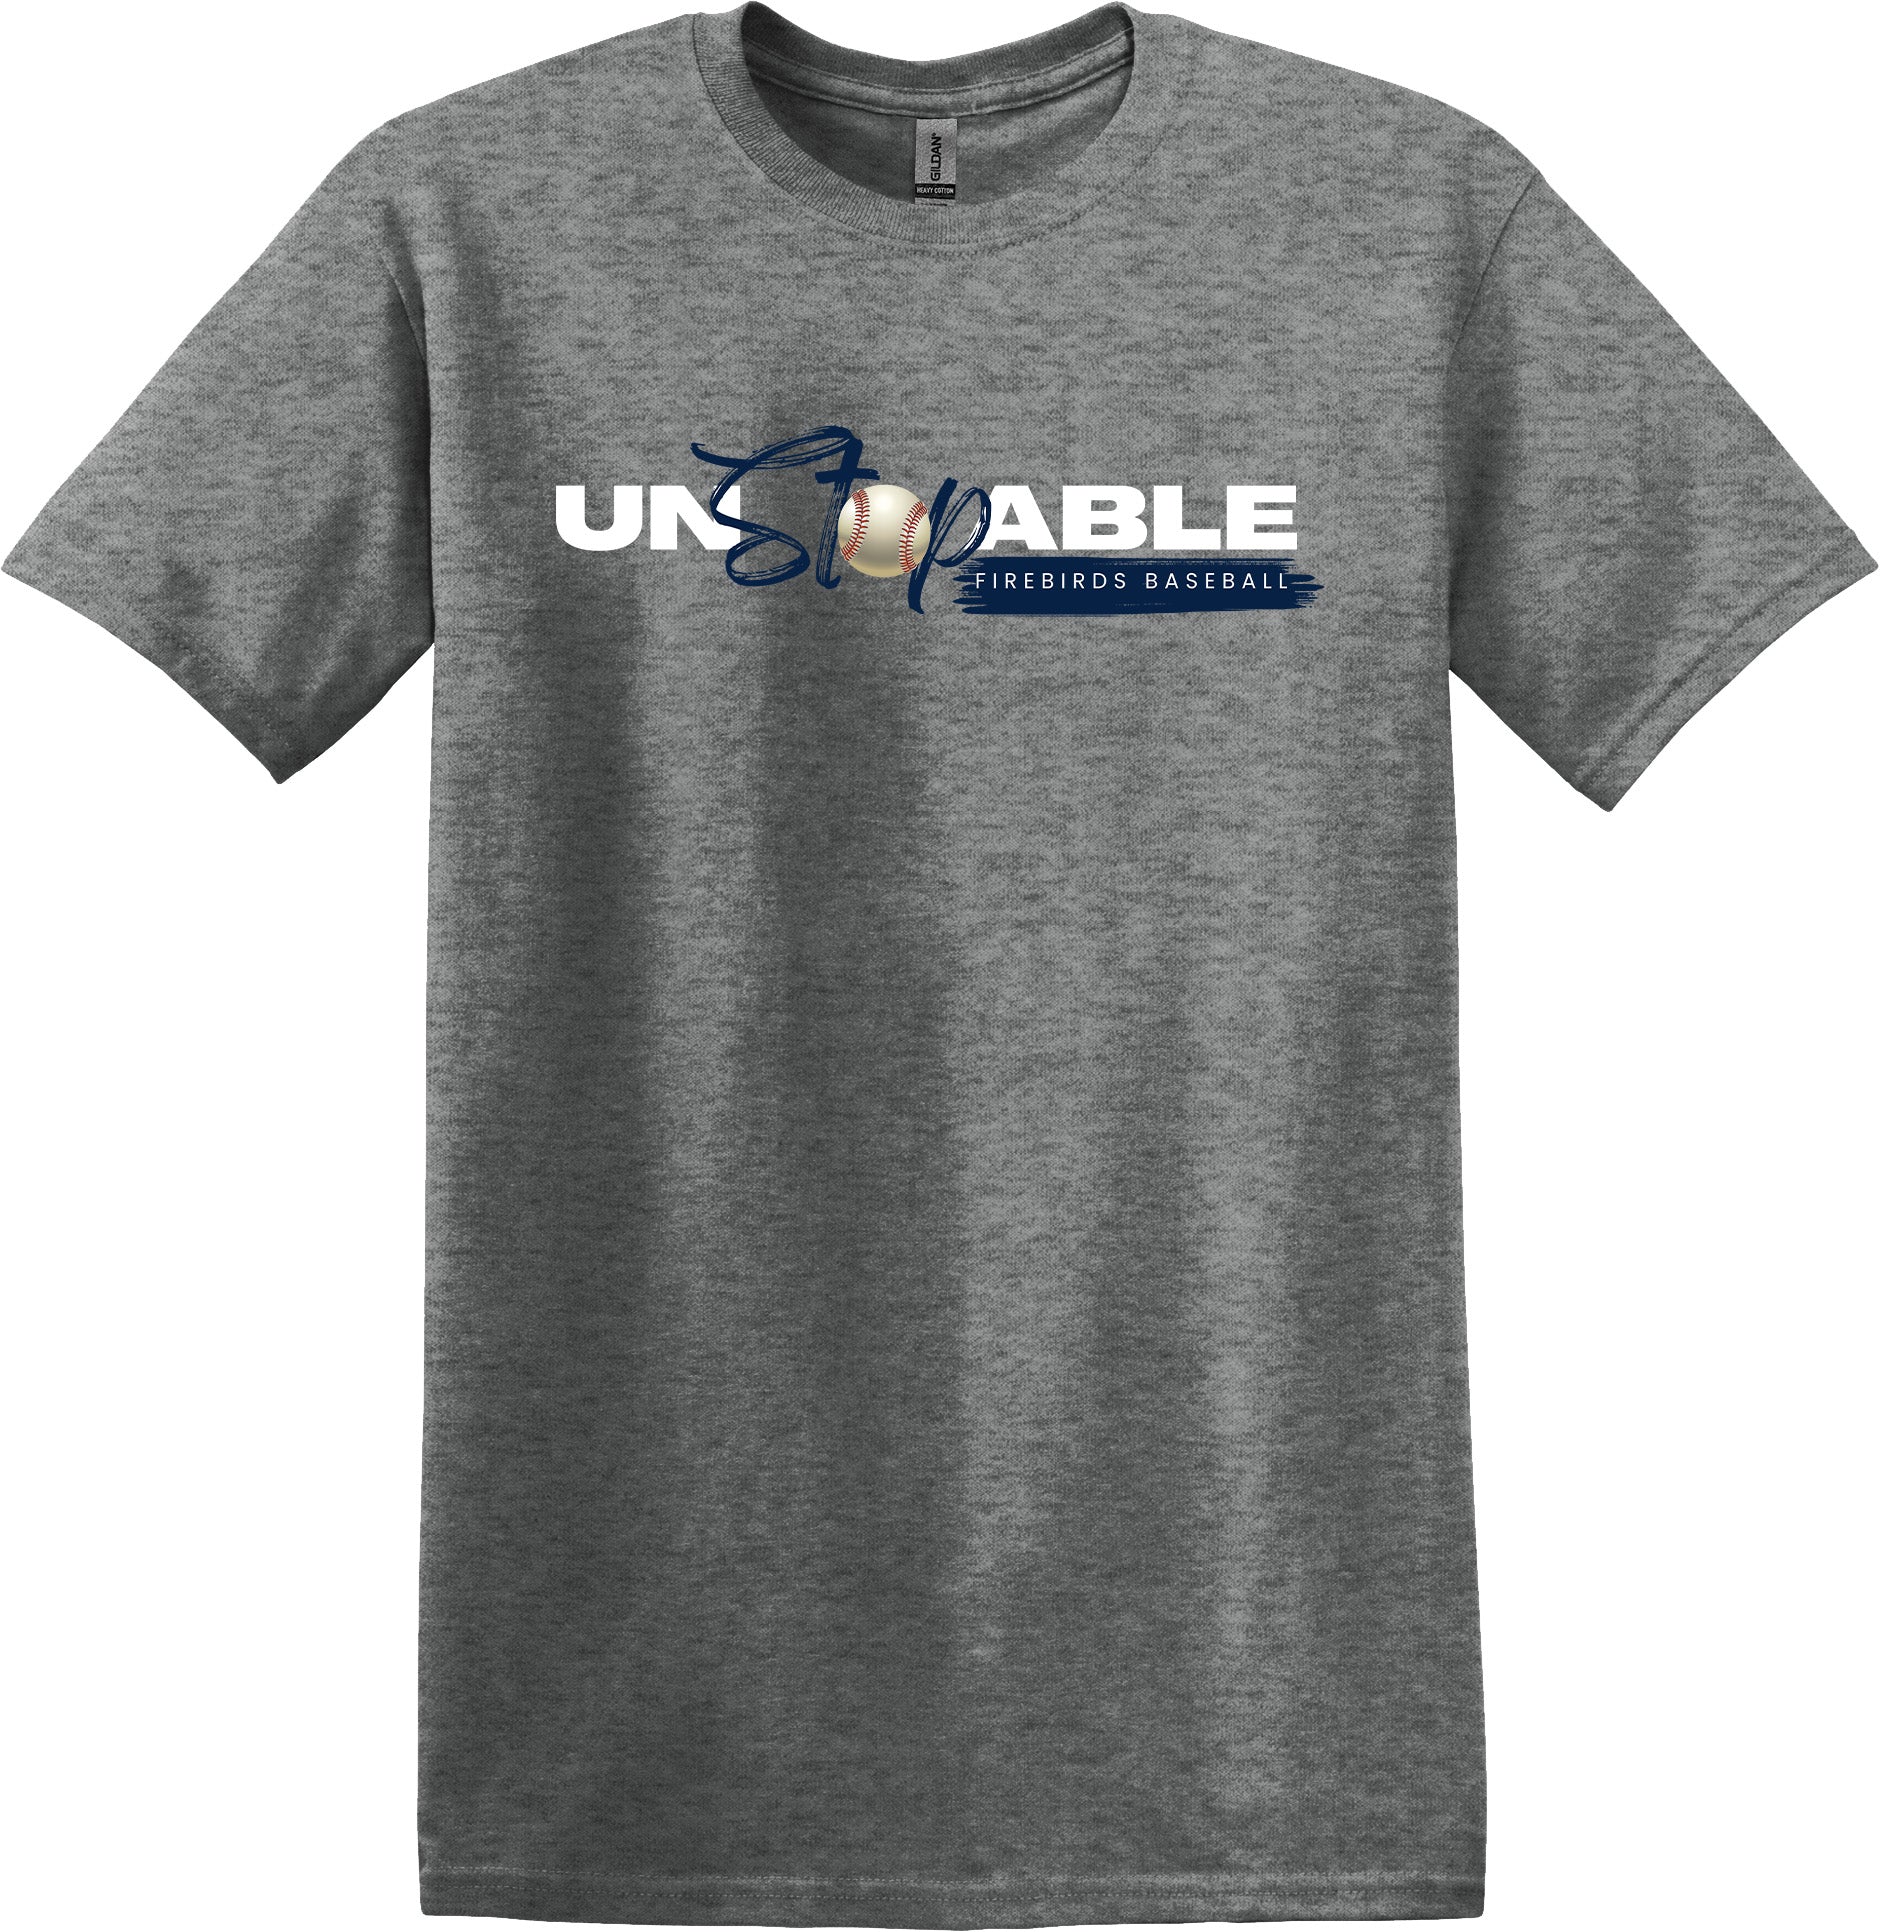 Fairmont Unstoppable Baseball T-Shirt